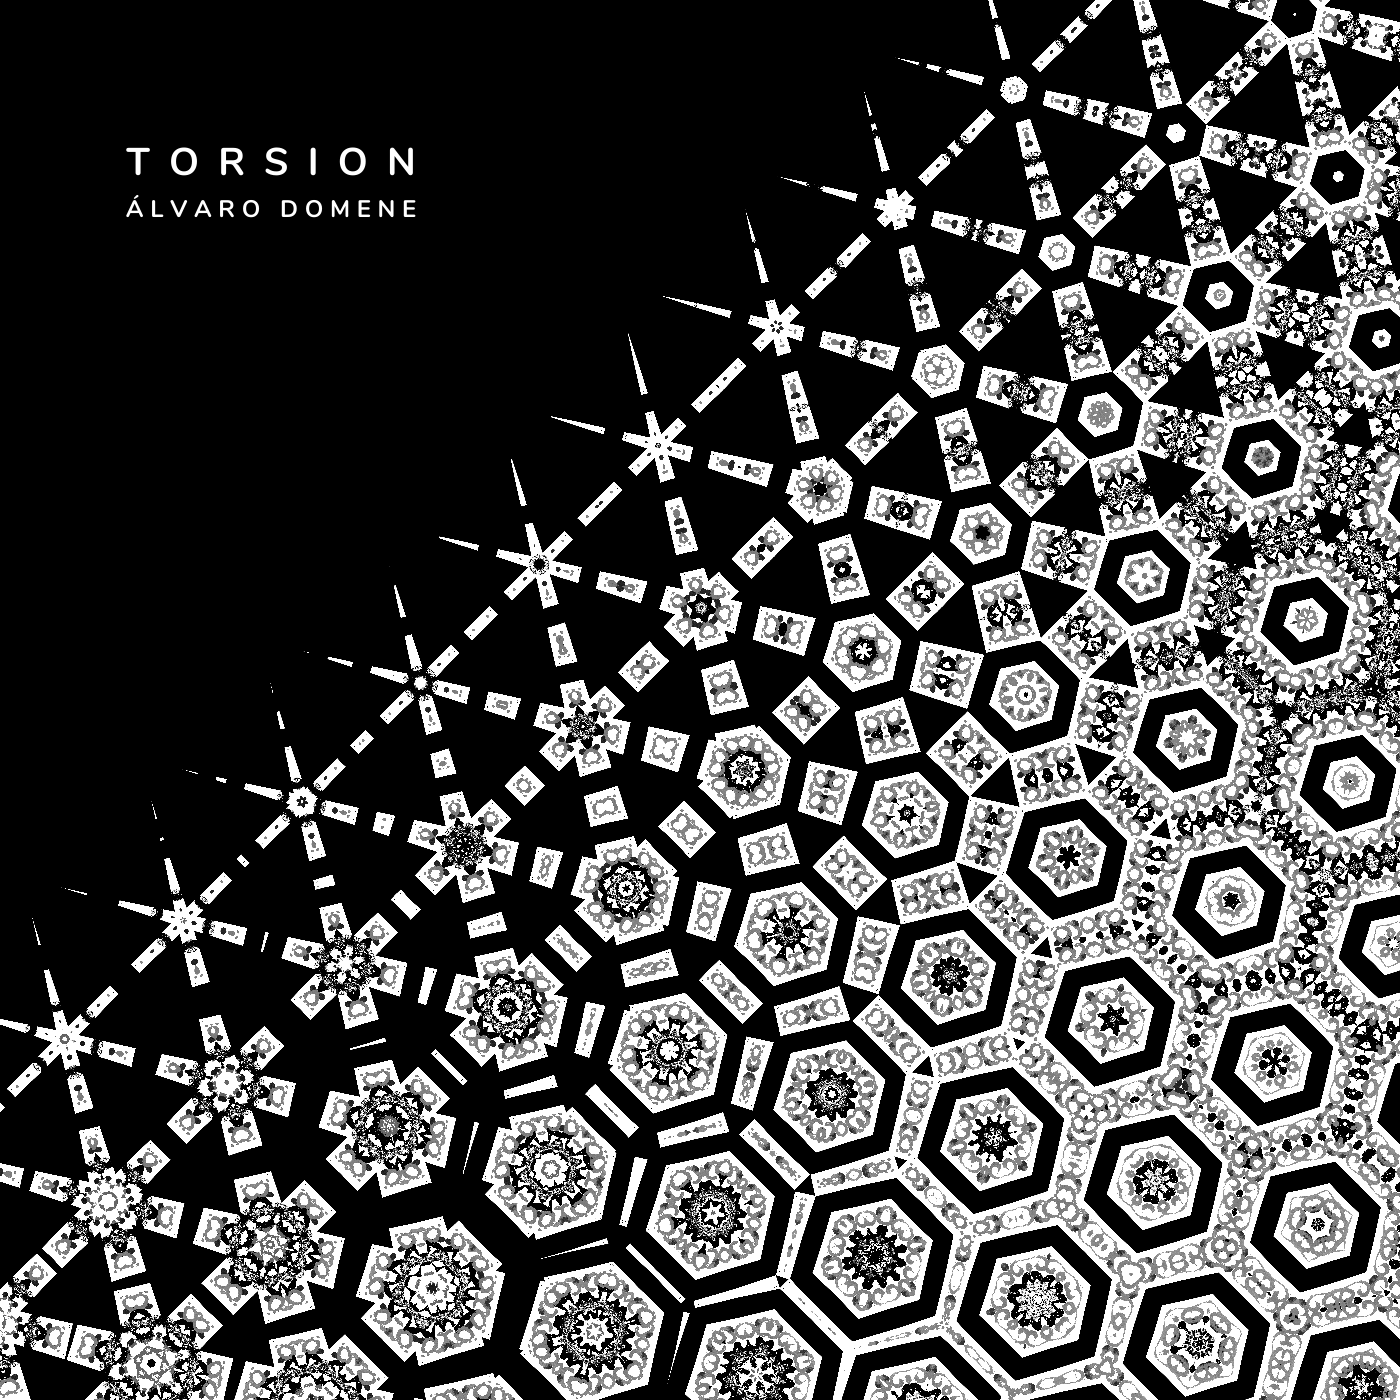  TORSION by Álvaro Domene